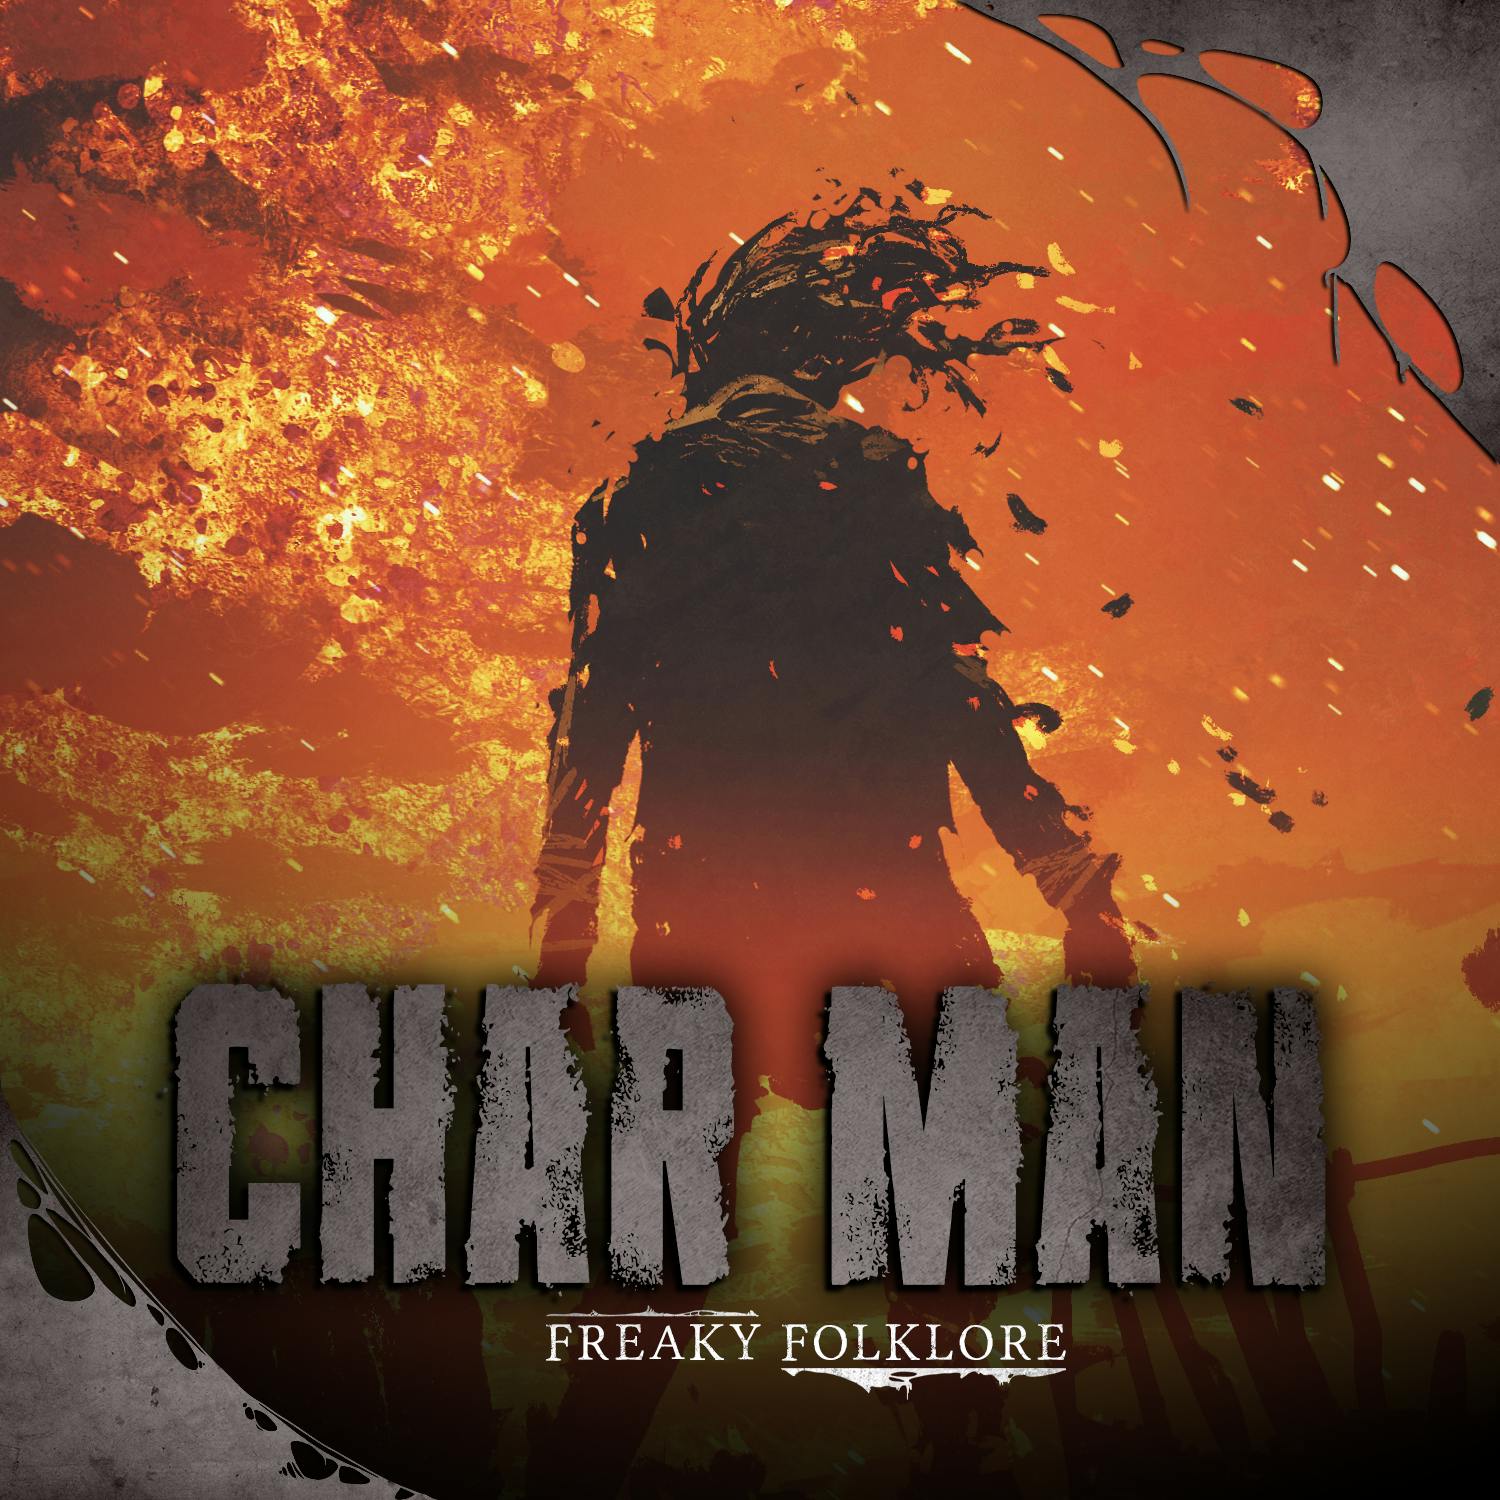 Char Man - The Burned Boogeyman